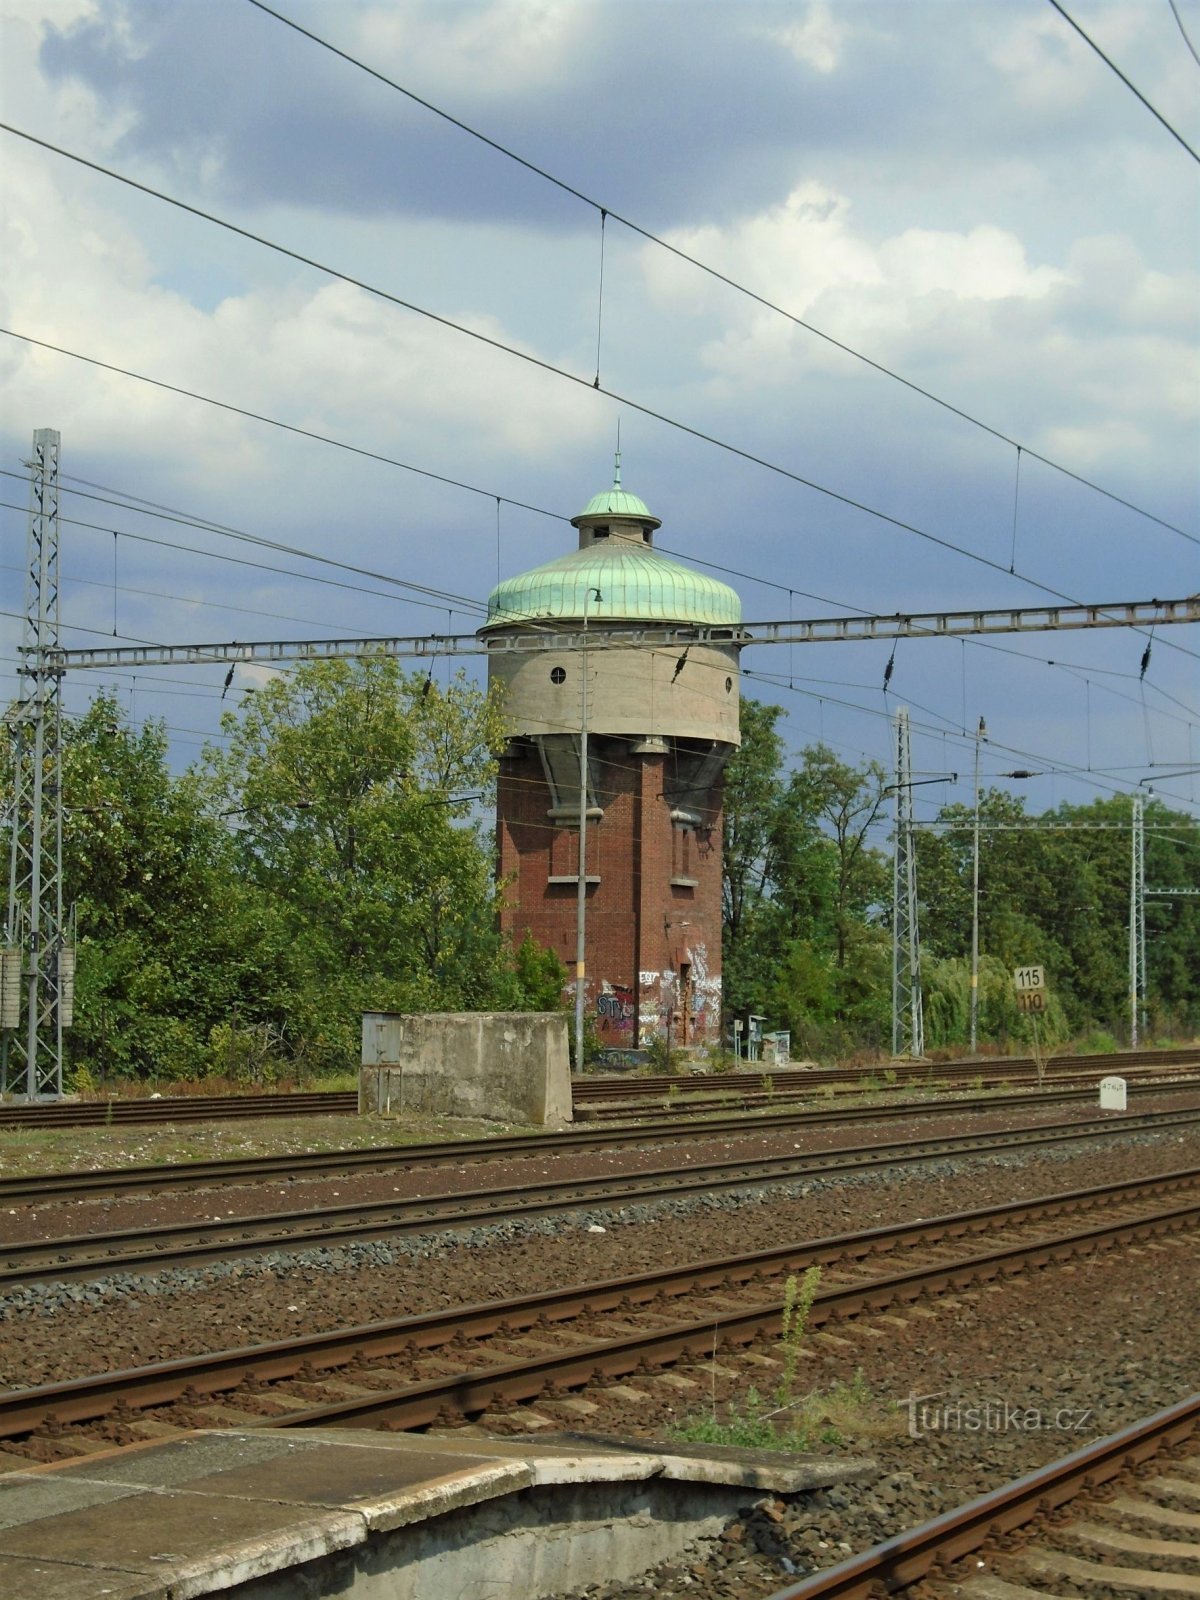 Rezervorul turnului stației (Roudnice nad Labem, 23.7.2018)